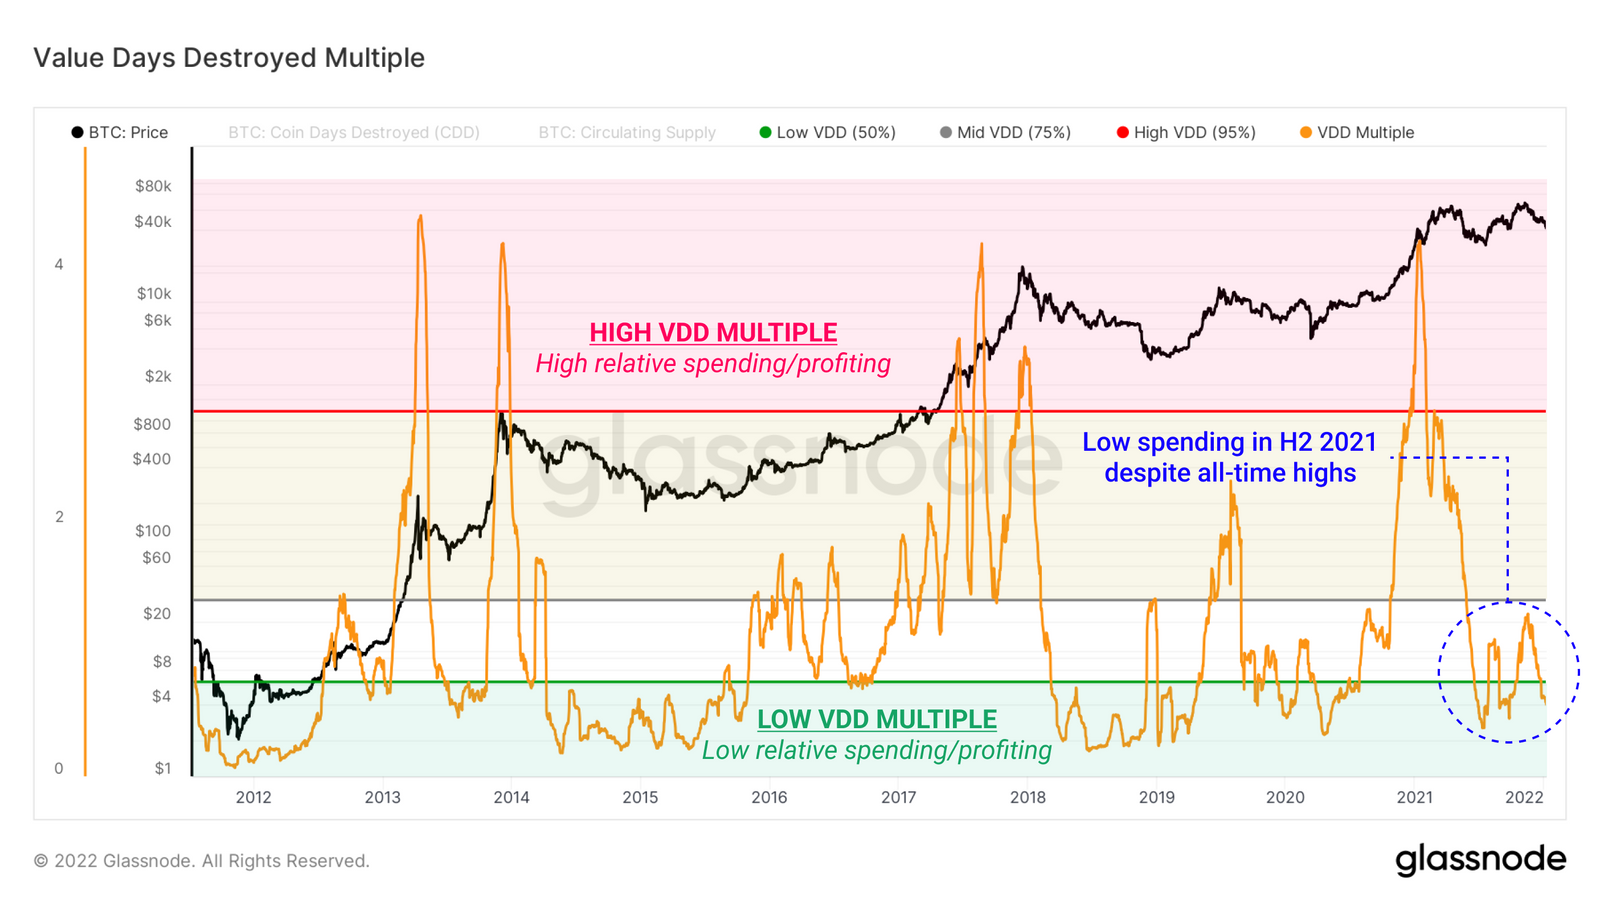 Value Days Destroyed Multiple (VDD) - Grafik